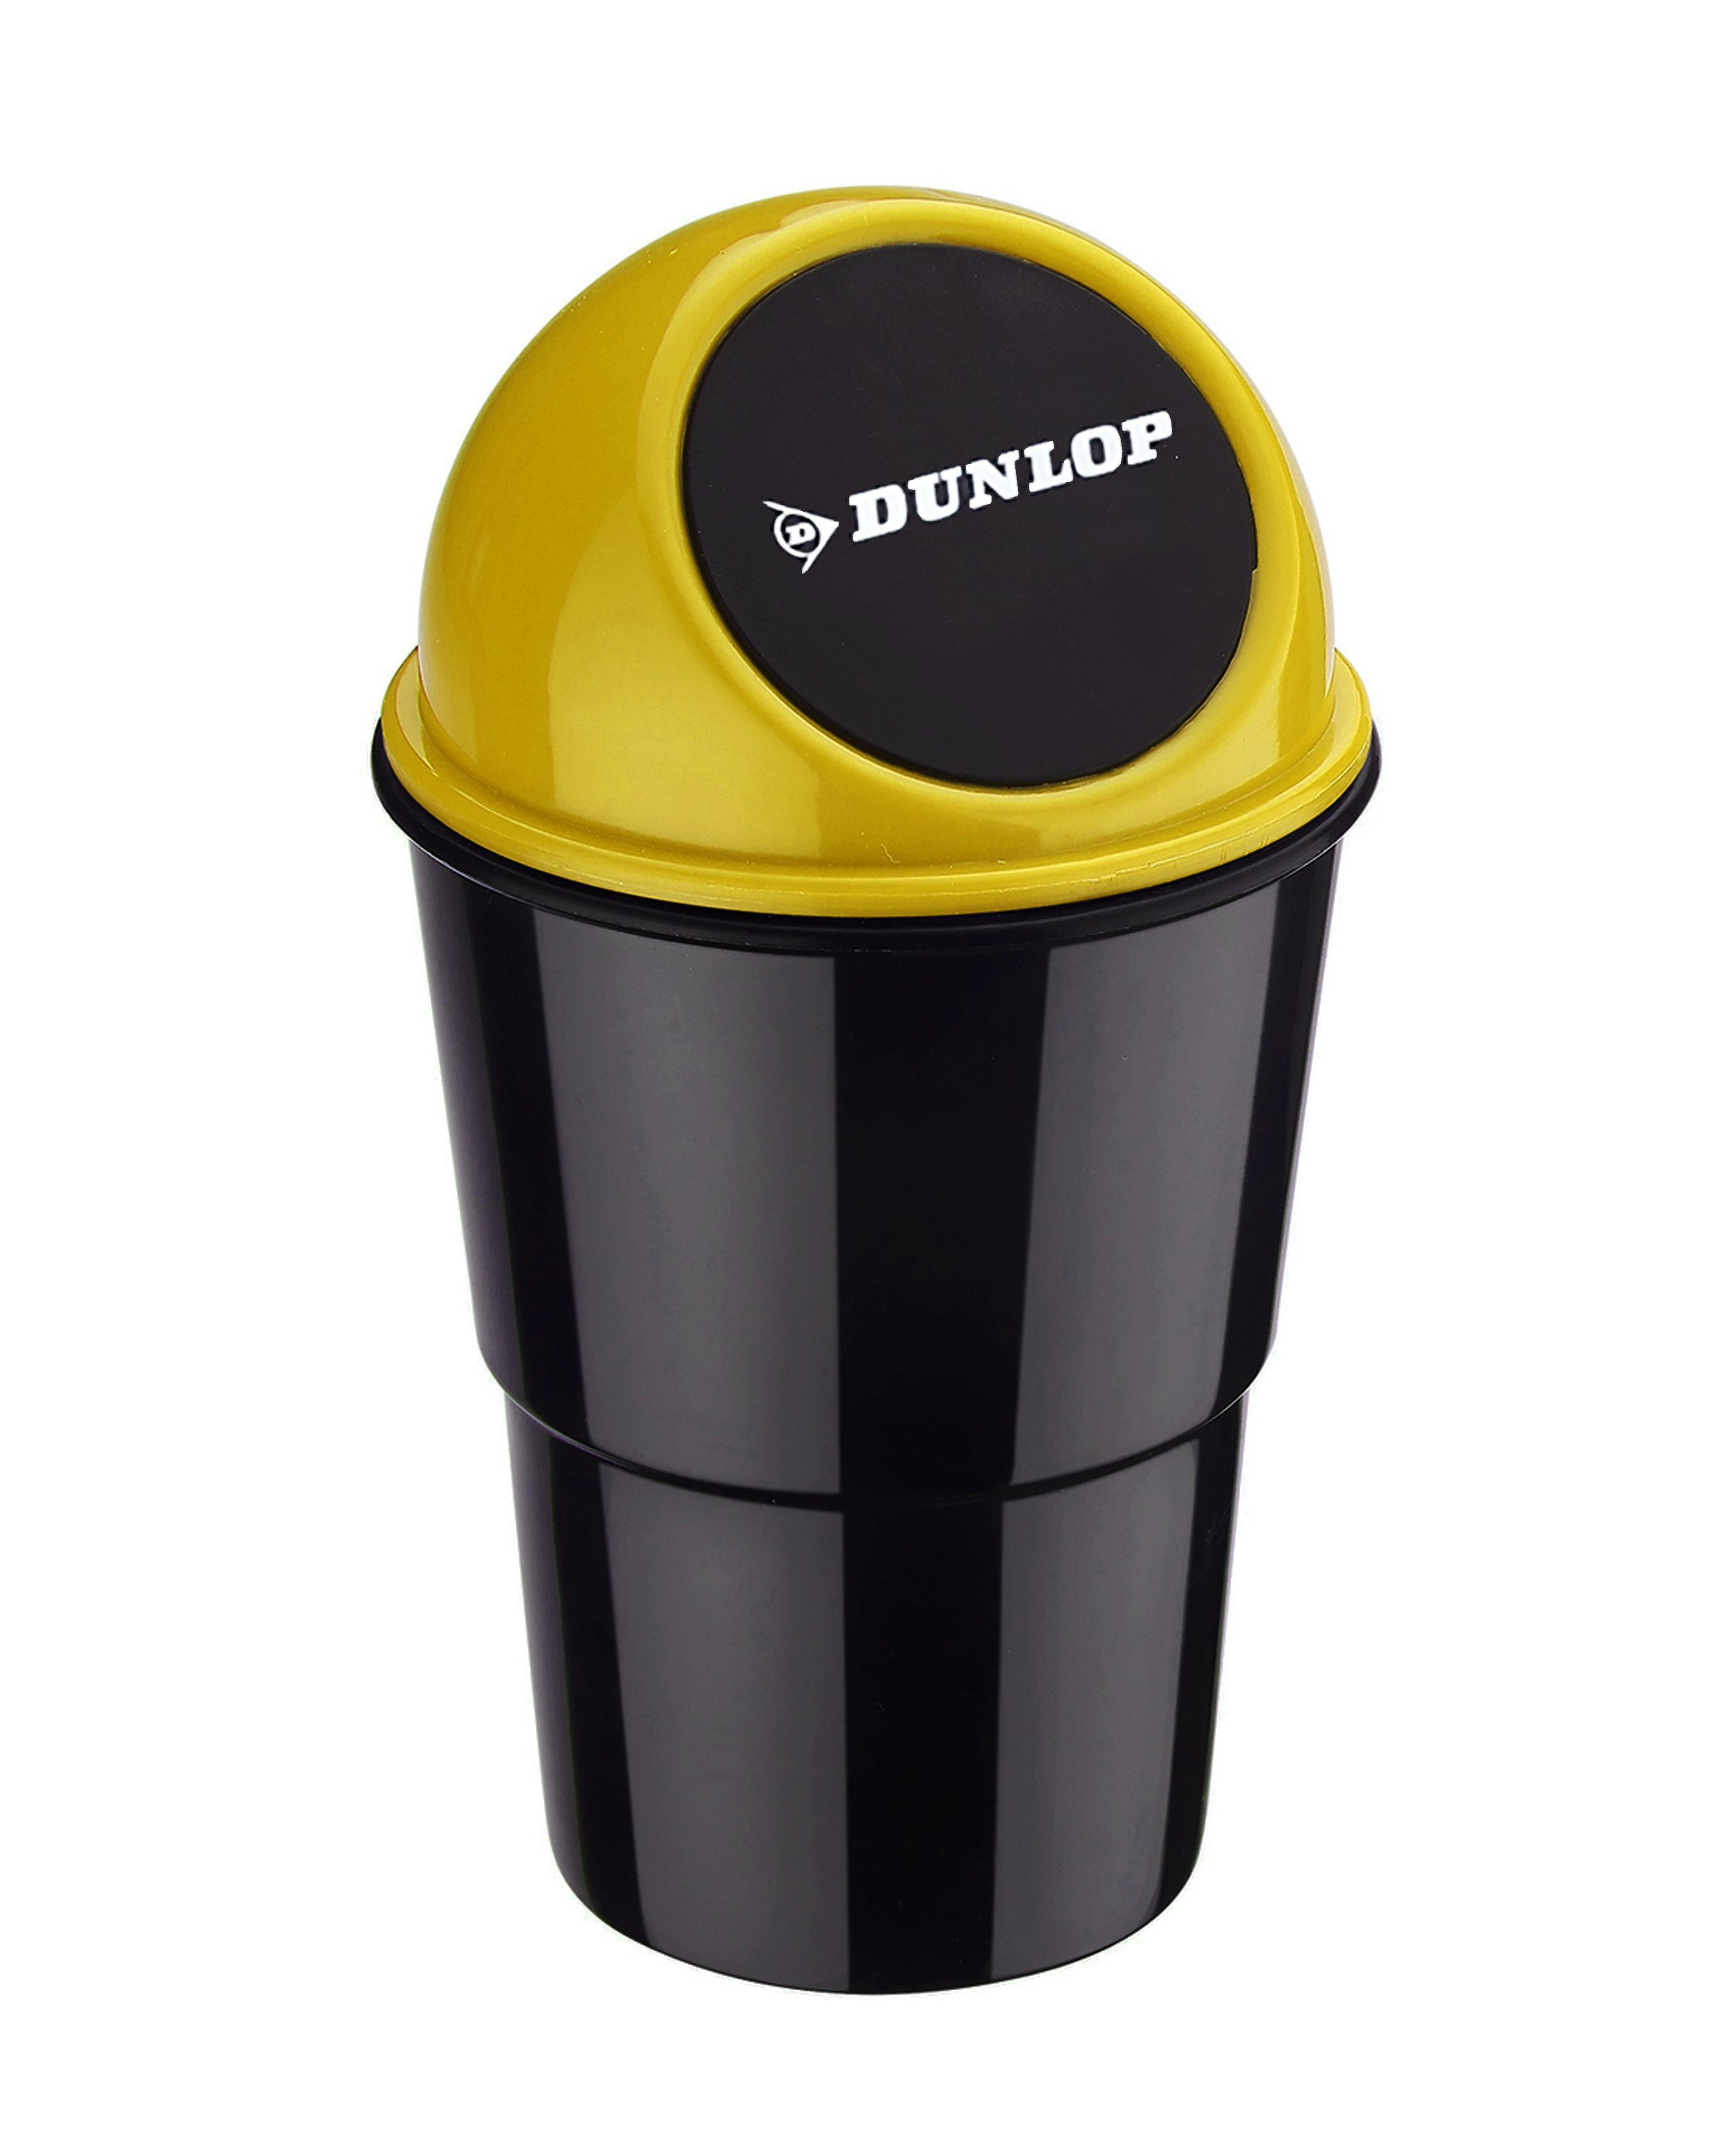 Dunlop Mülleimer Mini MÜLLEIMER für Auto Push-Deckel DUNLOP Automülleimer PKW KFZ Abfalleimer Tischabfalleimer Mülltonne Getränkehalter 74 (Gelb)